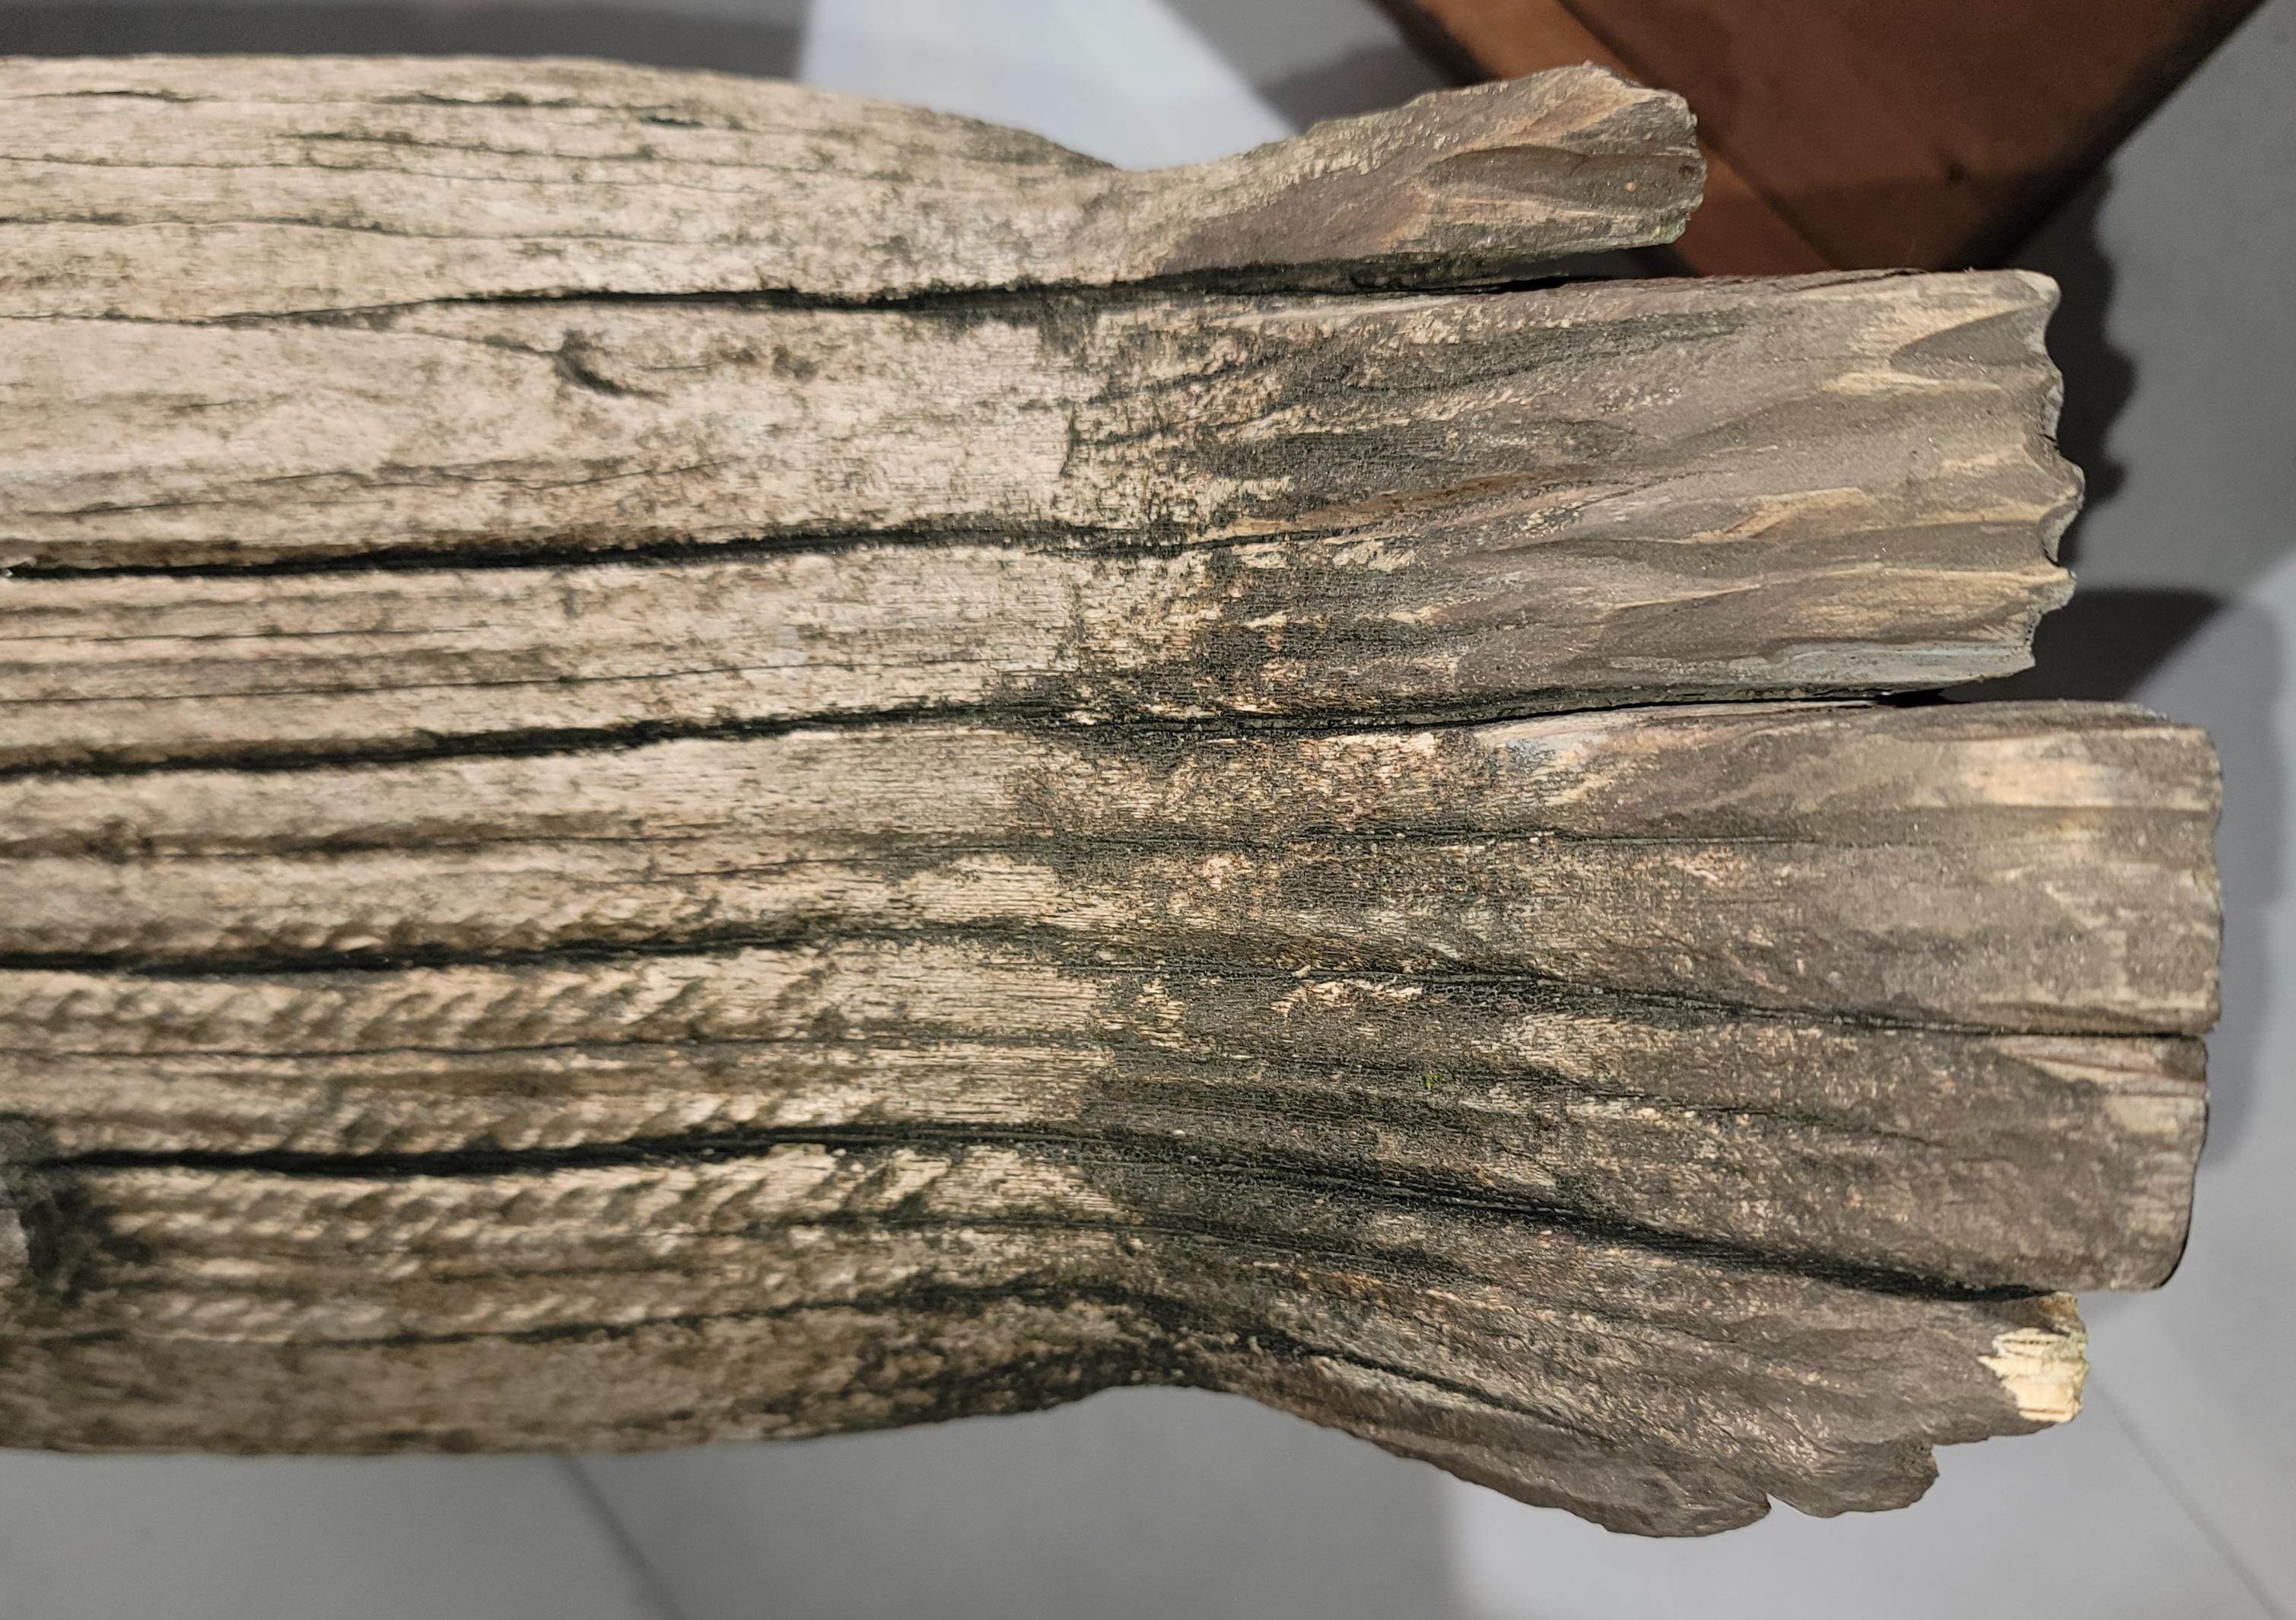 Diese handgeschnitzte kanadische Gans ist aus einem Stück Holz handgeschnitzt und hat ihre ursprüngliche Oberfläche bzw. Patina behalten, die im Freien entstanden ist.